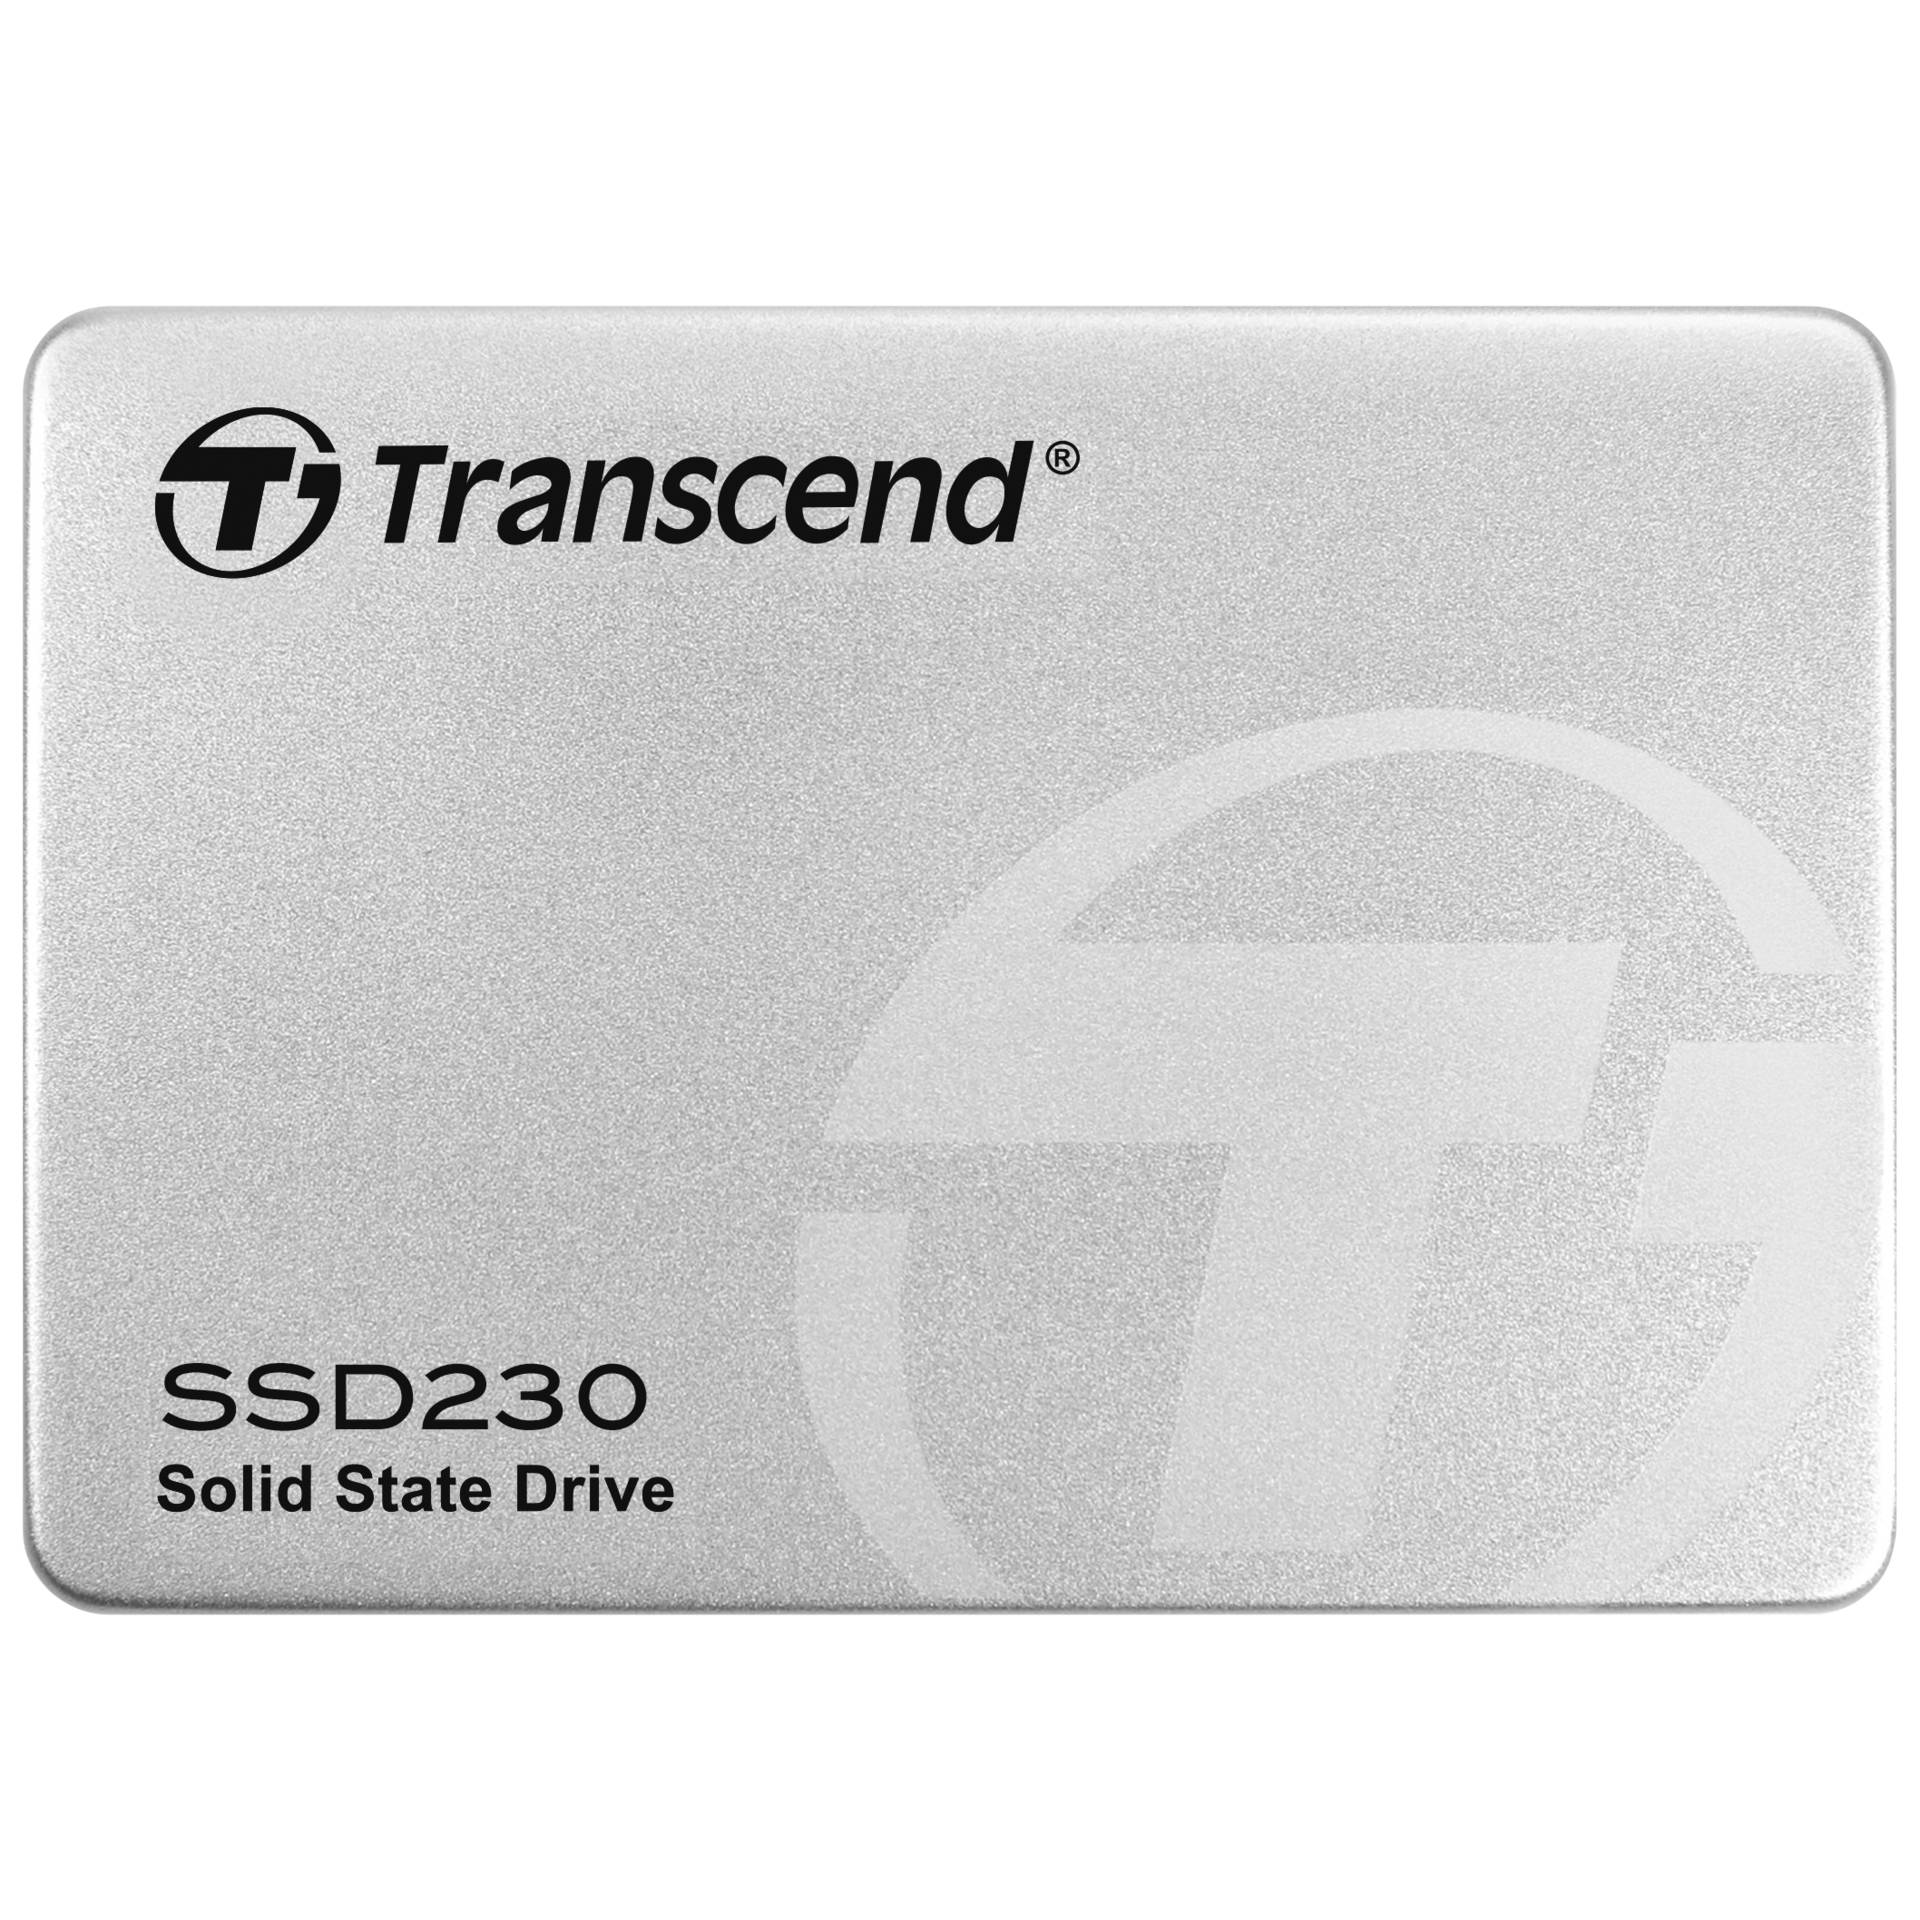 256 GB SSD Transcend SSD230S, SATA 6Gb/s, lesen: 560MB/s, schreiben: 500MB/s, TBW: 140TB